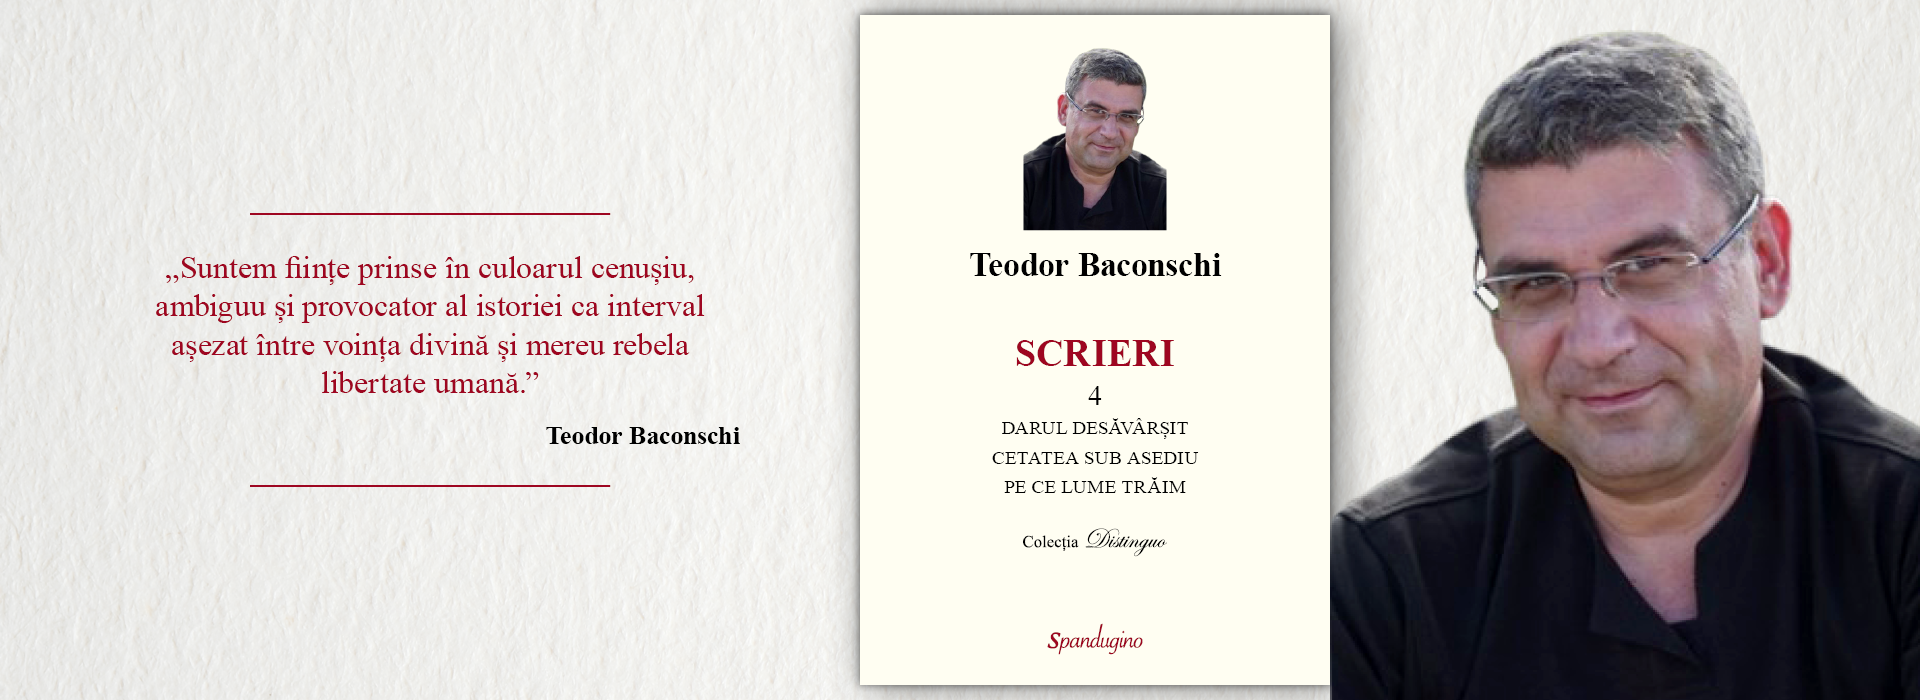 Teodor Baconschi - SCRIERI 4